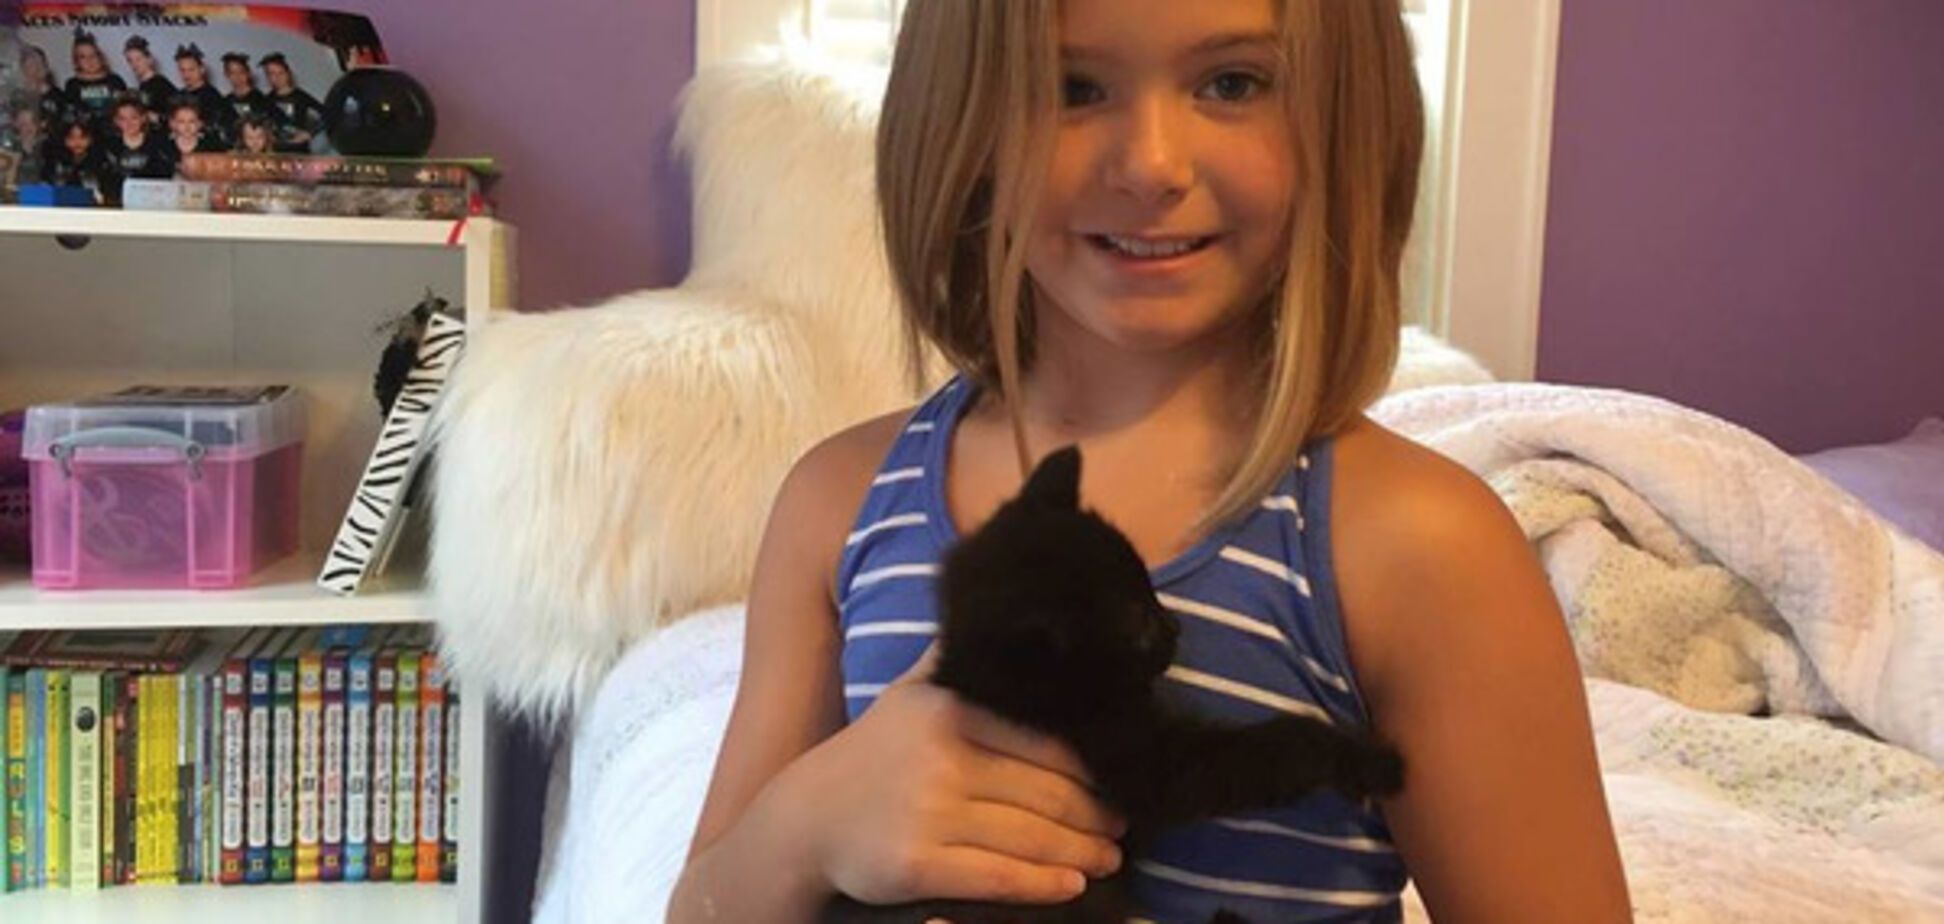 Справжні сльози щастя: мережу підкорило відео з реакцією дівчинки на подарунок